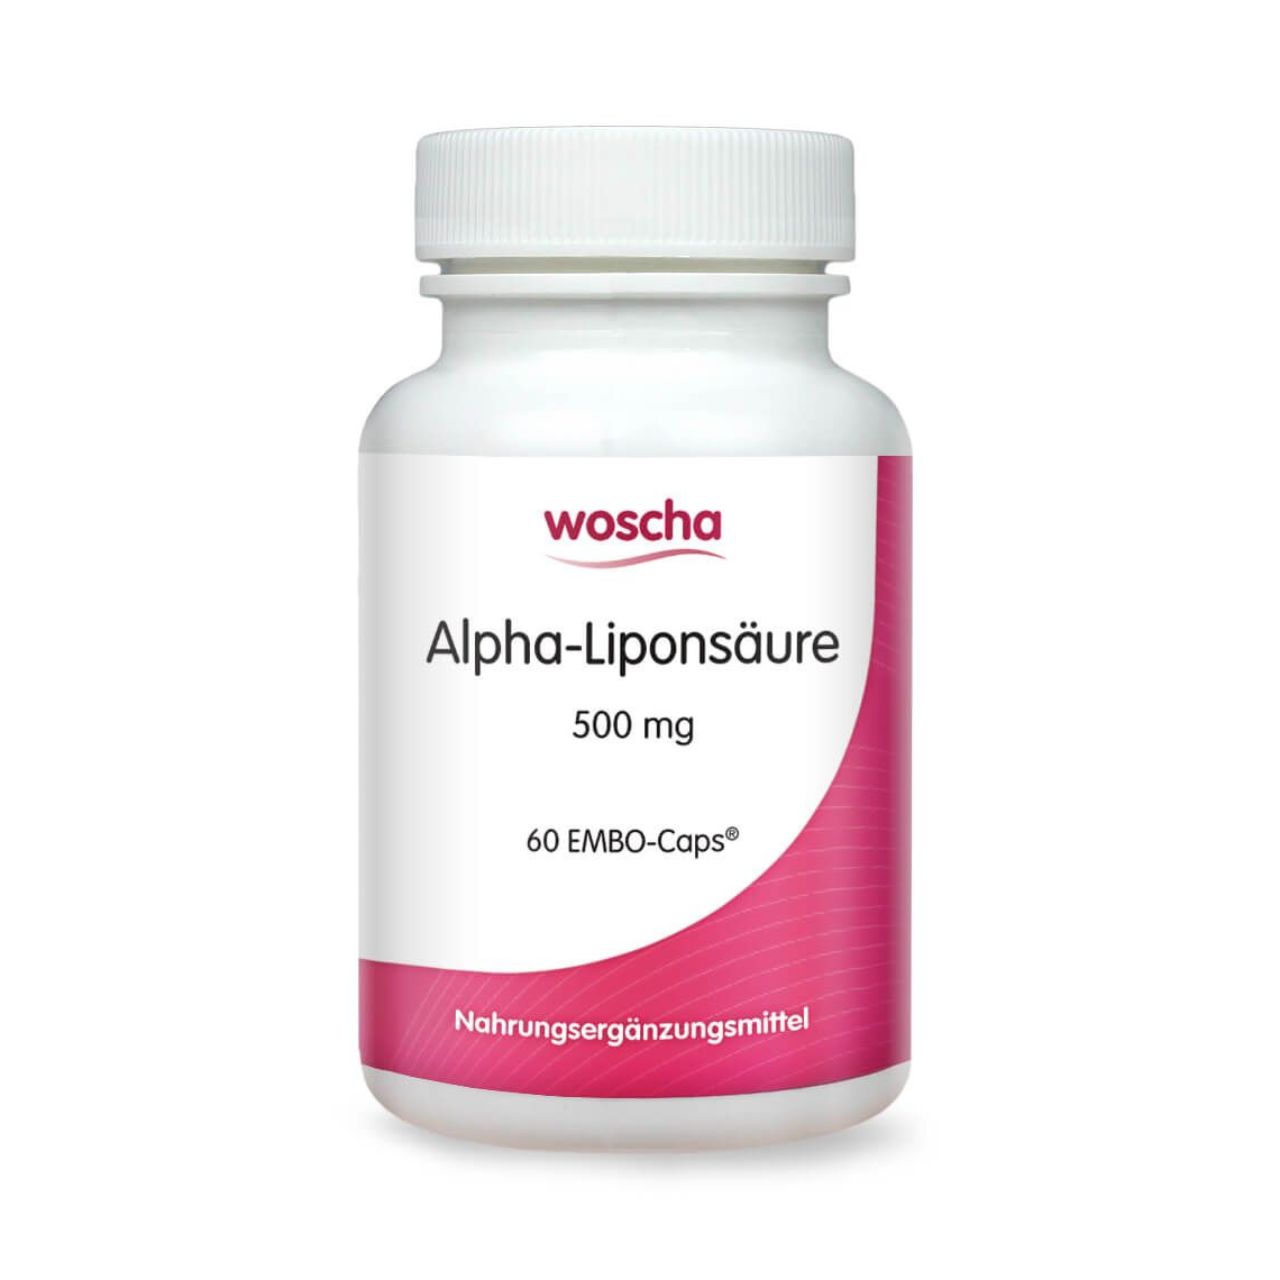 Woscha Alpha-Liponsäure von podo medi beinhaltet 60 Kapseln